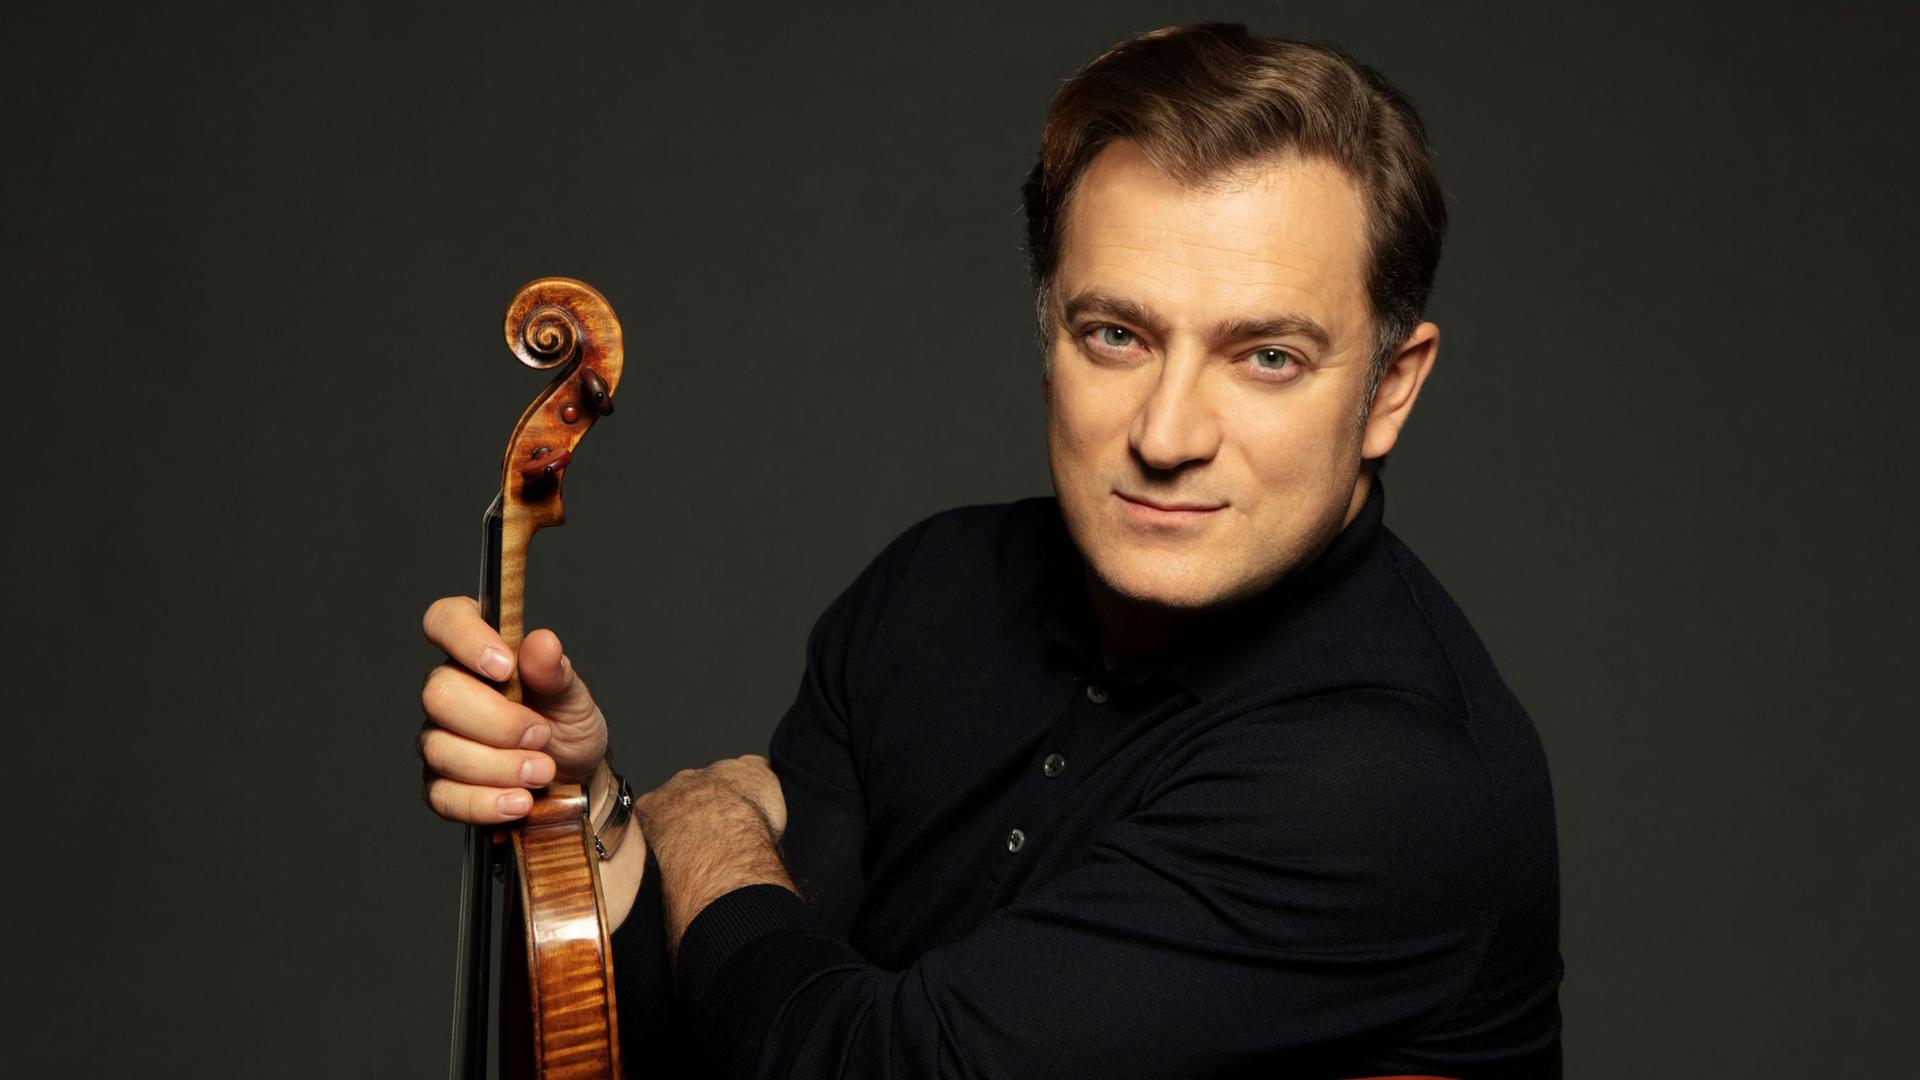 Renaud Capuçon schaut über seine linke Schulter in die Kamera, während er seine Violine präsentiert.